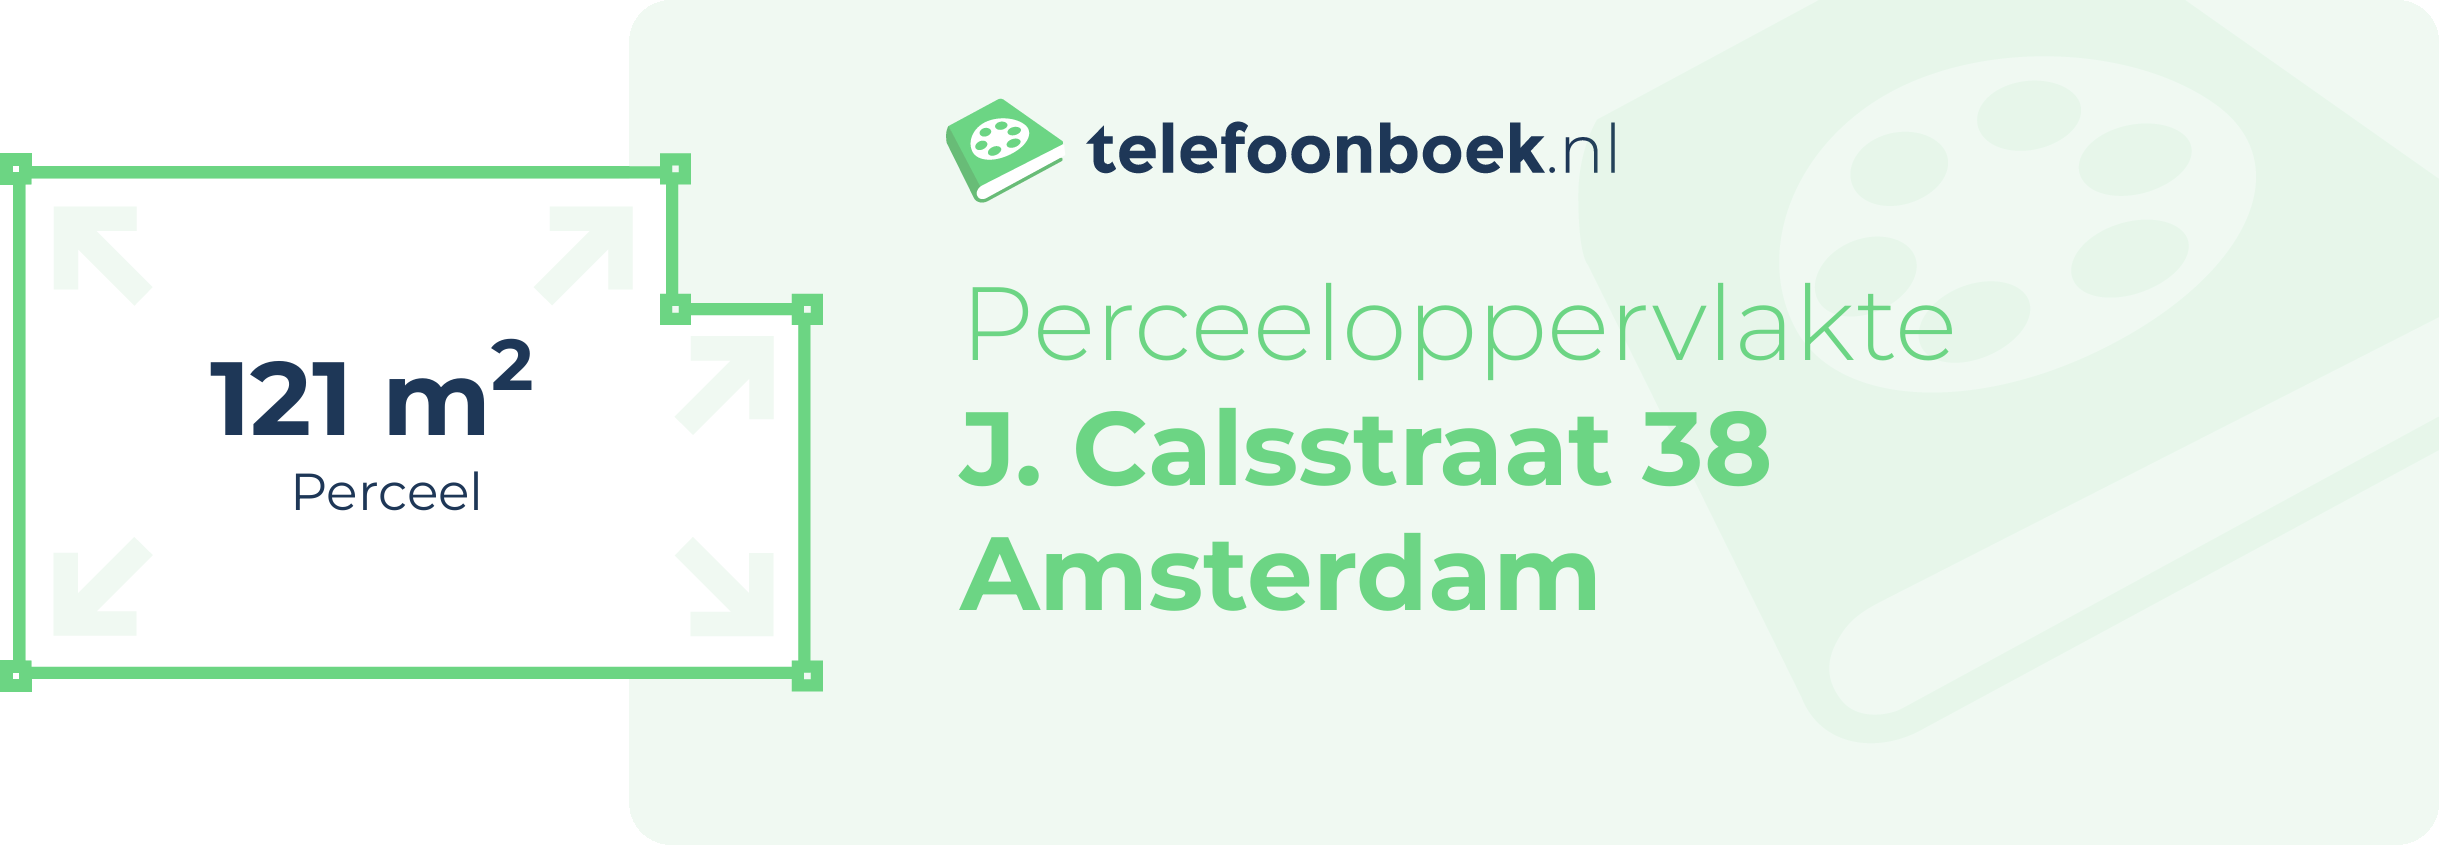 Perceeloppervlakte J. Calsstraat 38 Amsterdam